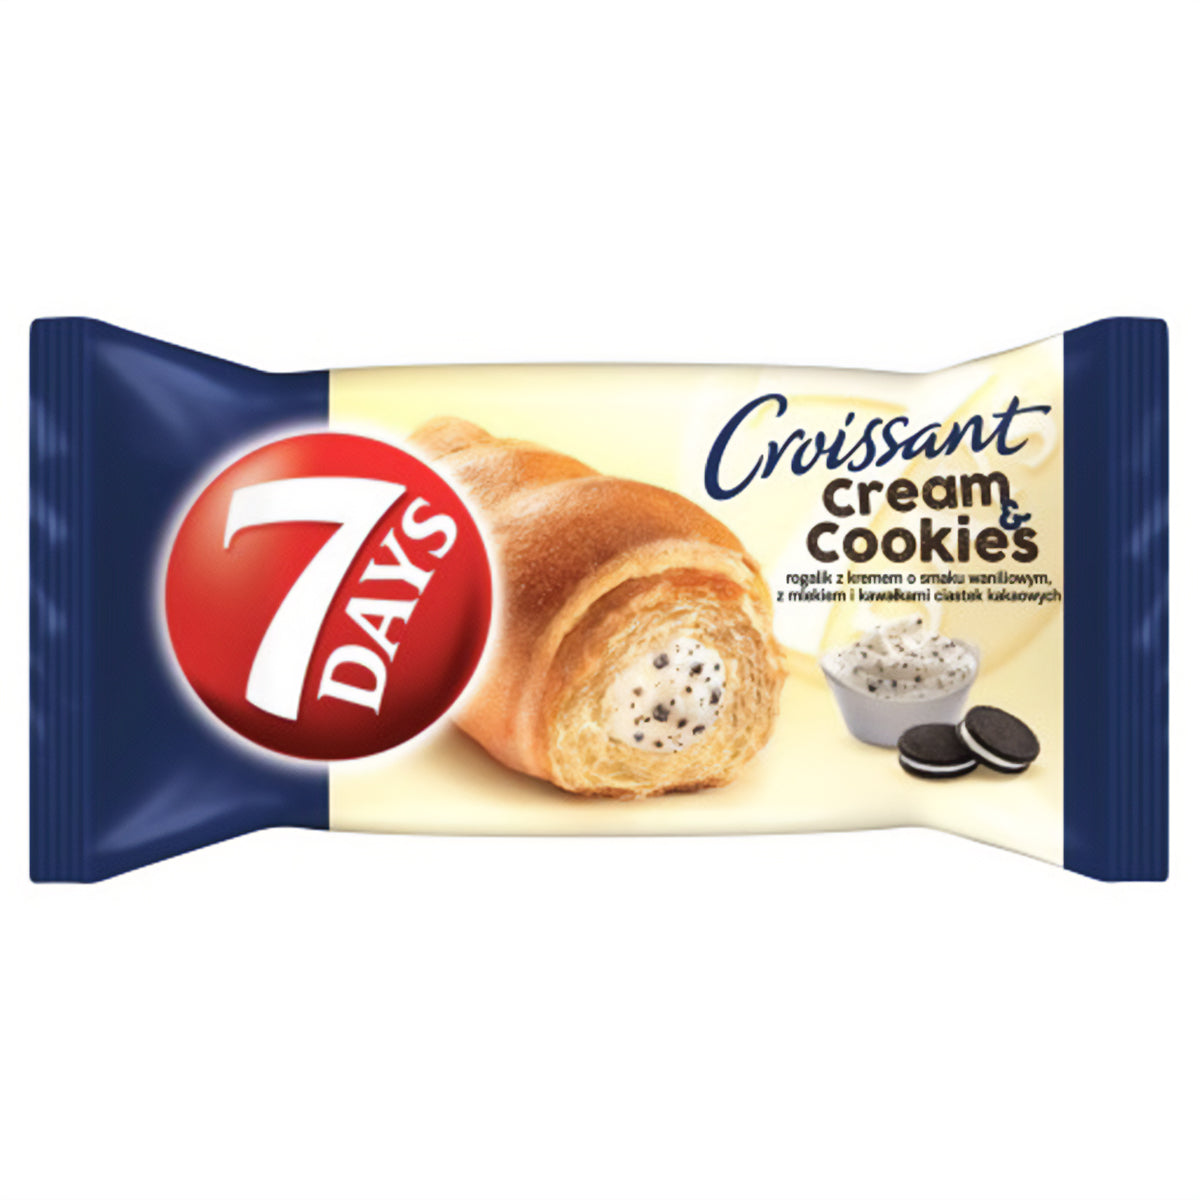 7 Days - Cream & Cookies Max - 80g croissant cream cookies.